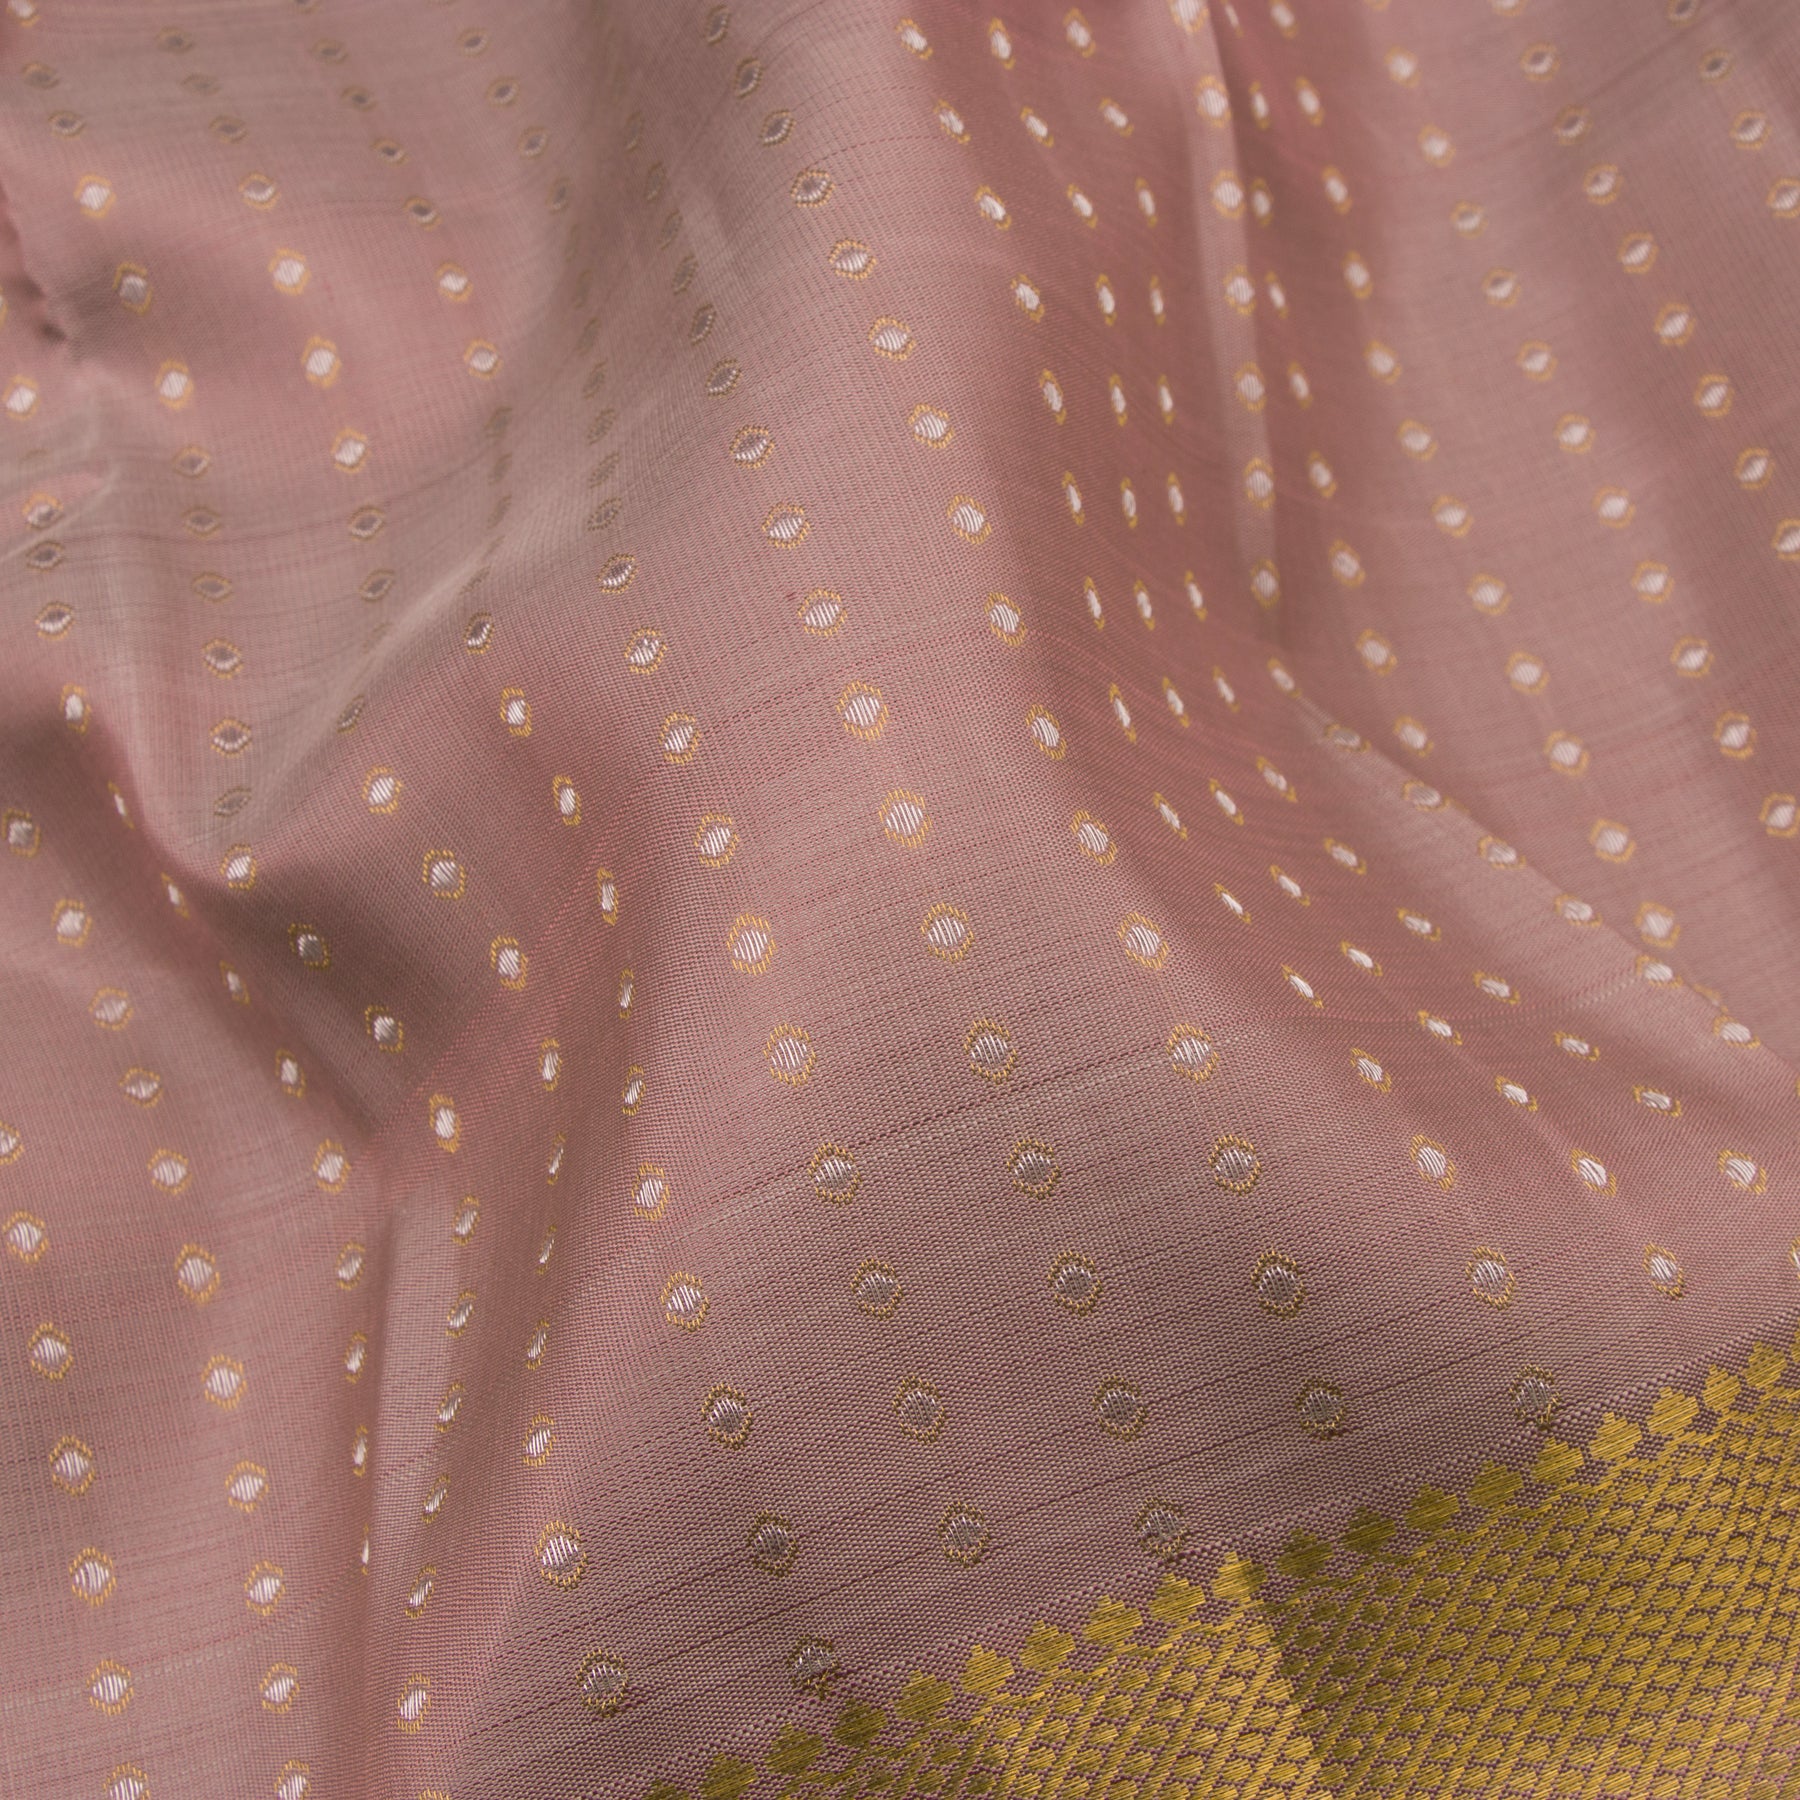 Kanakavalli Kanjivaram Silk Sari 23-595-HS001-01858 - Fabric View